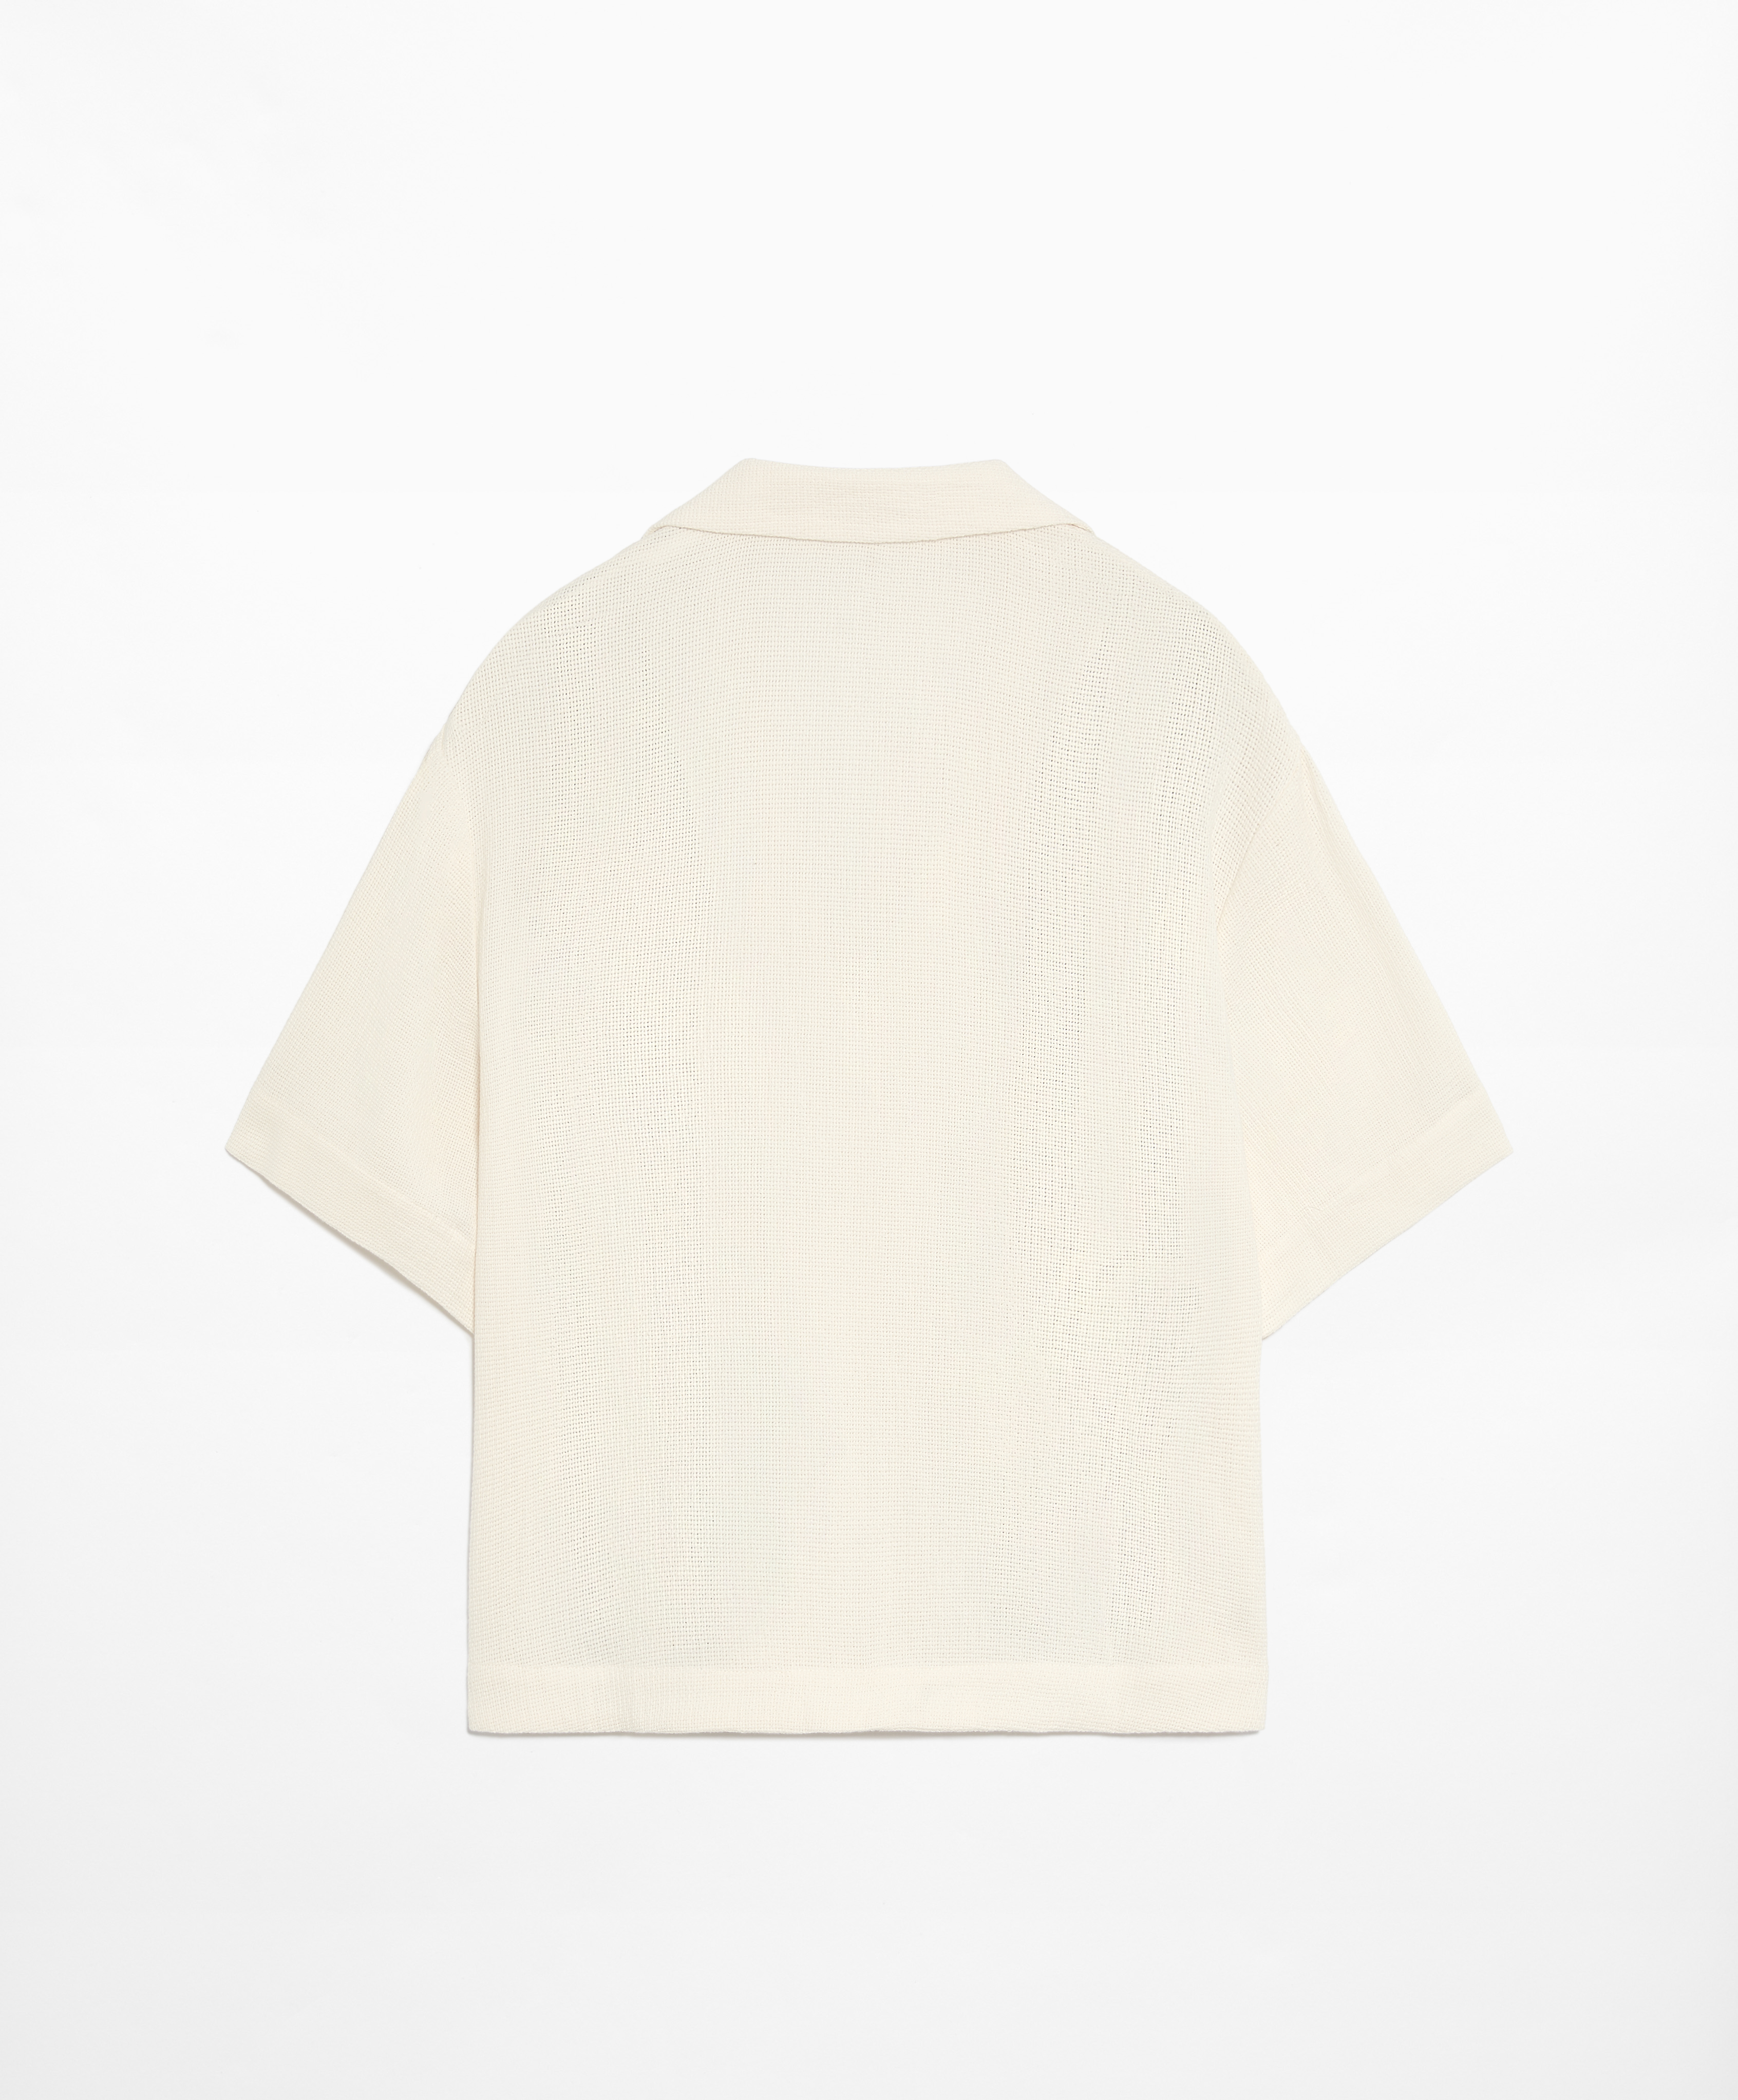 Blusa manga corta bordado con algodón